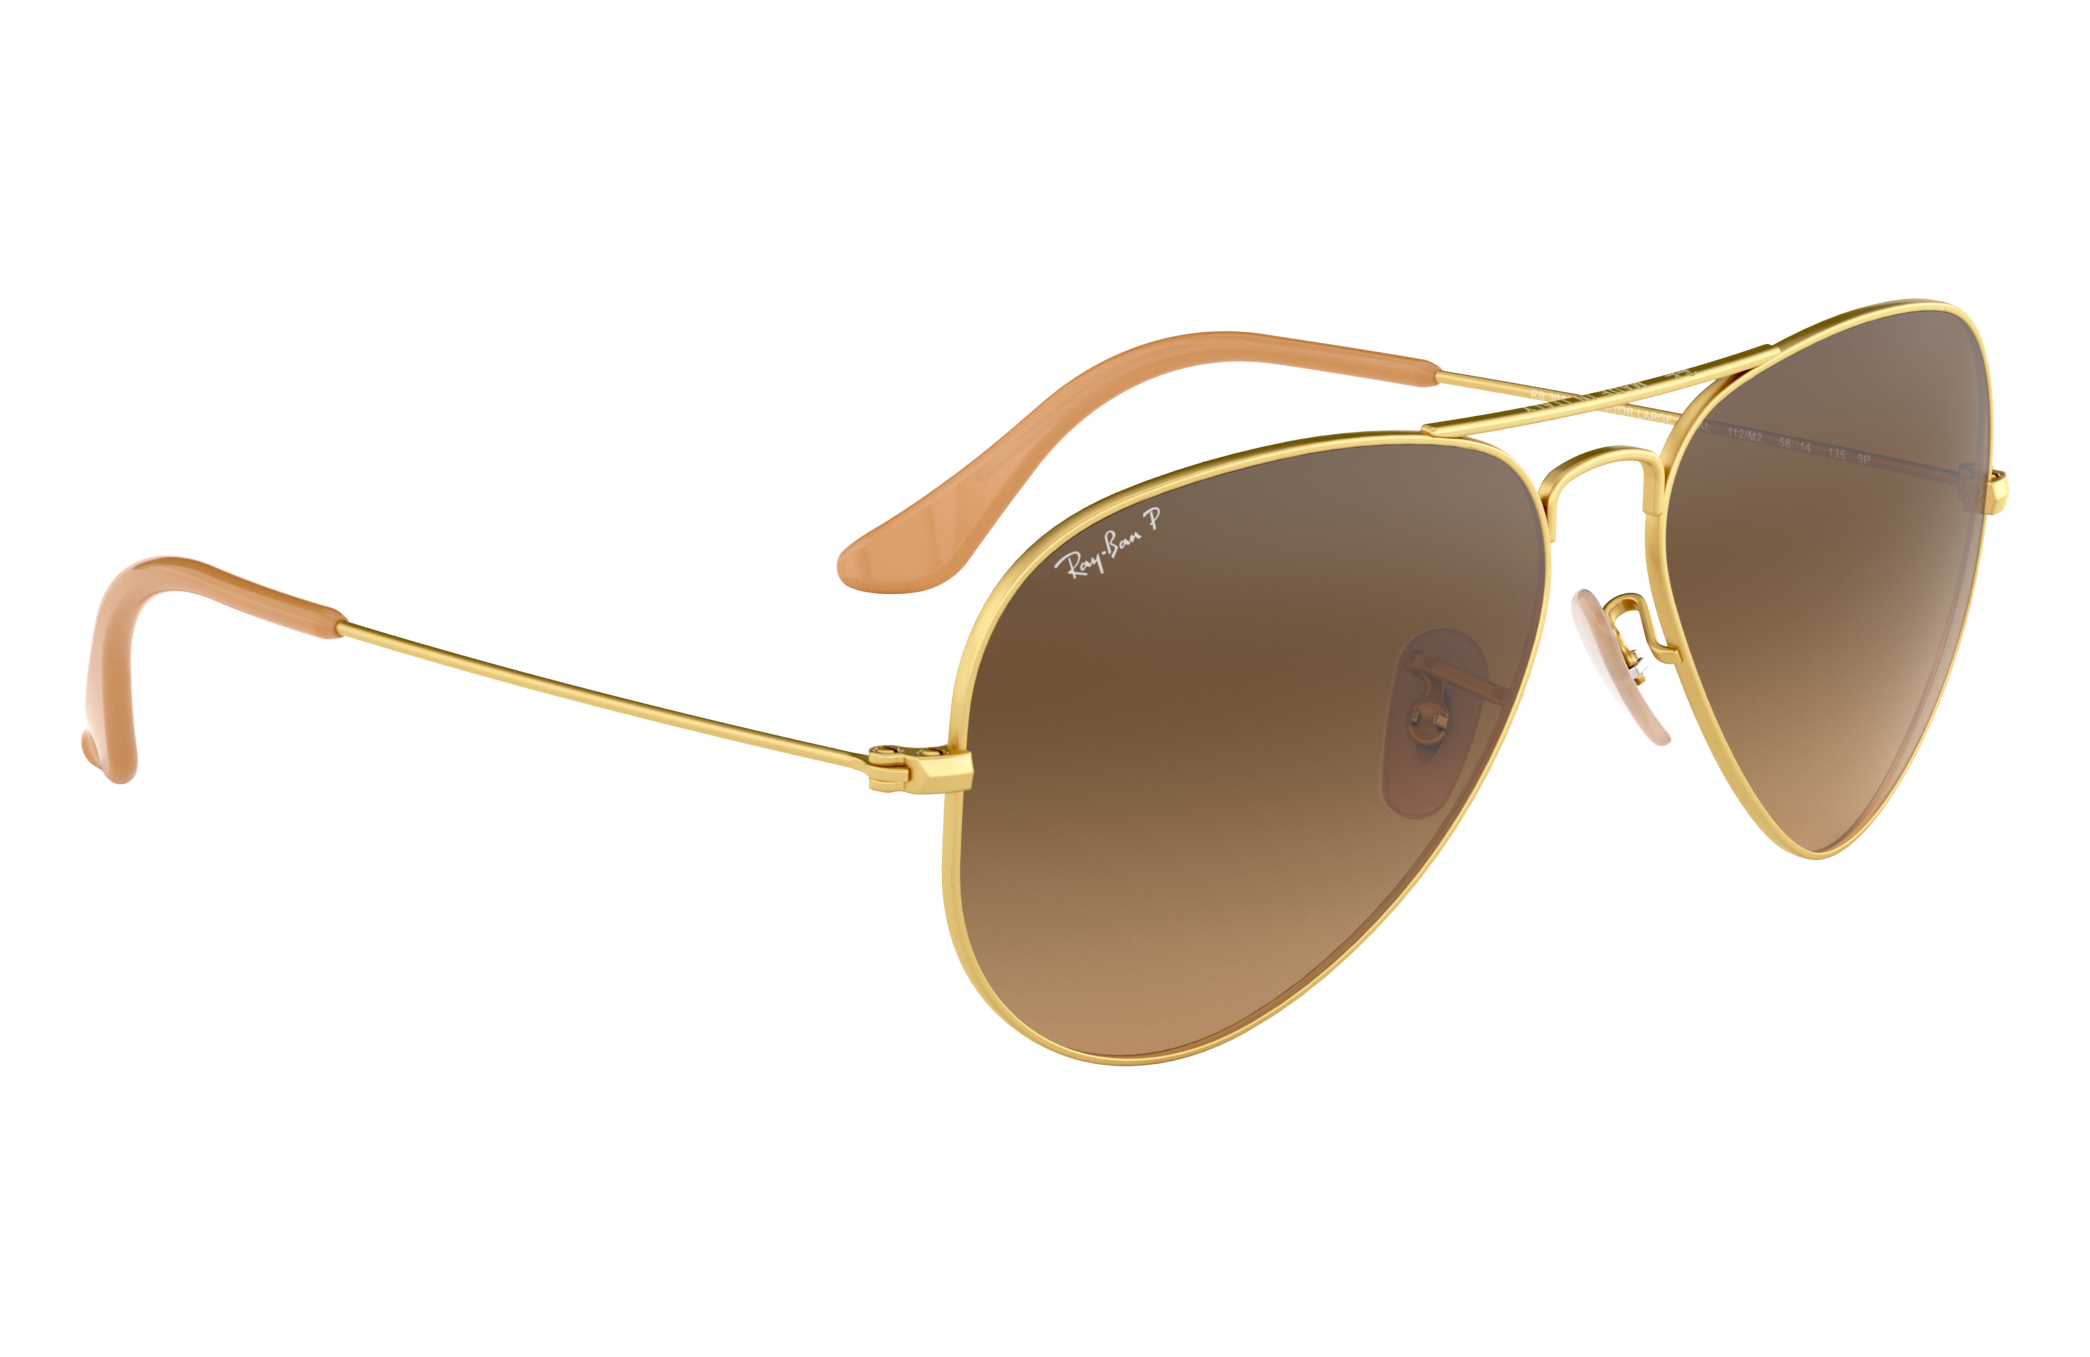 ray ban p aviator sunglasses